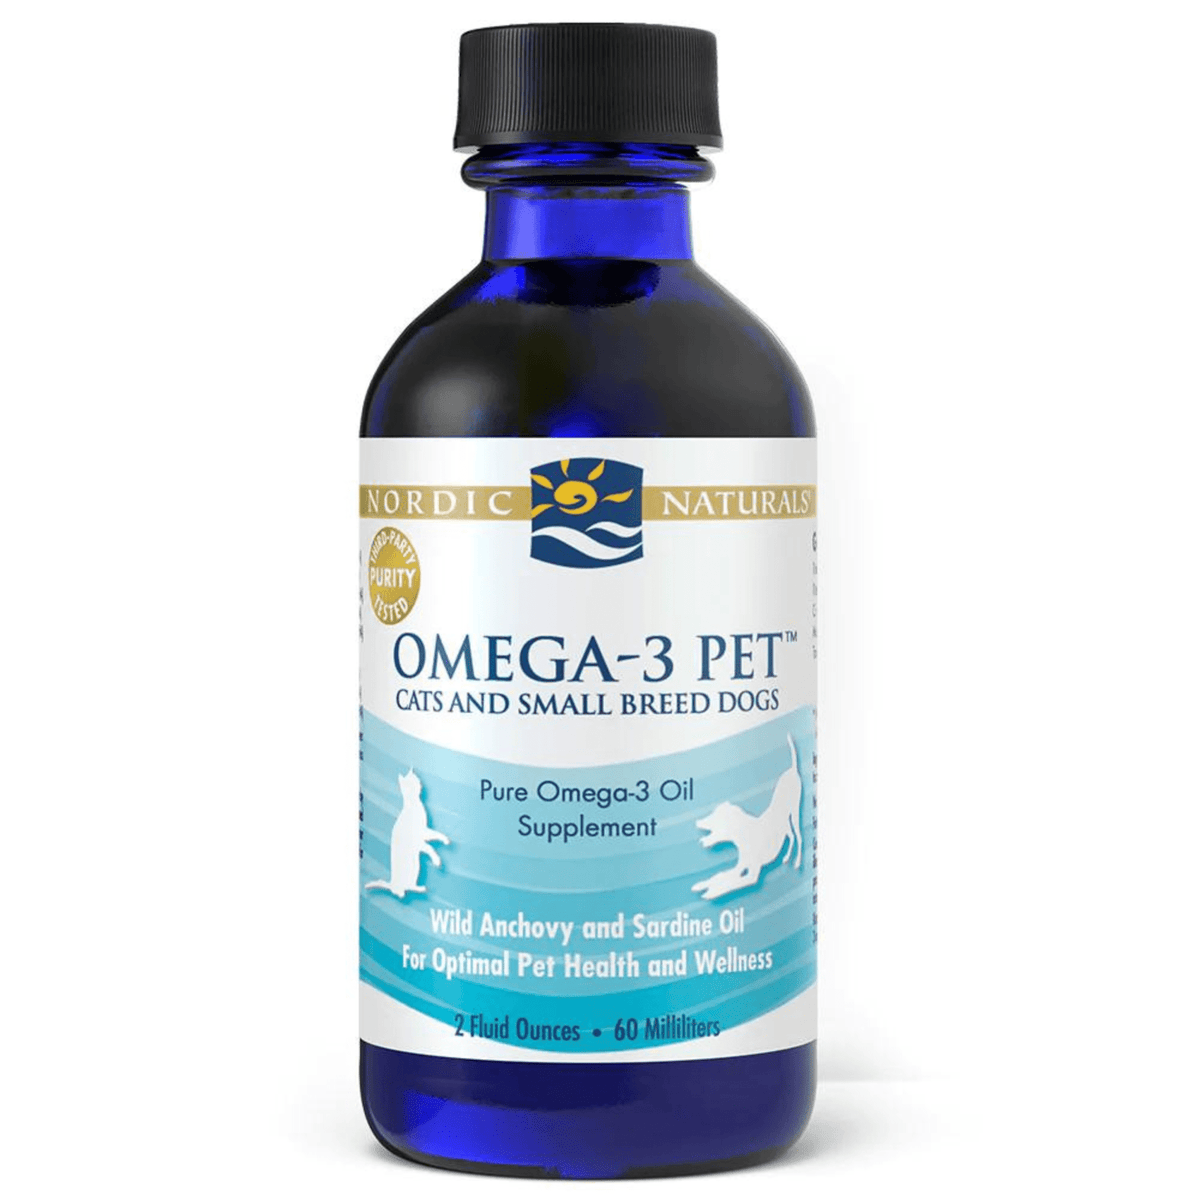 Primary Image of Omega-3 Pet Fish Oil Liquid